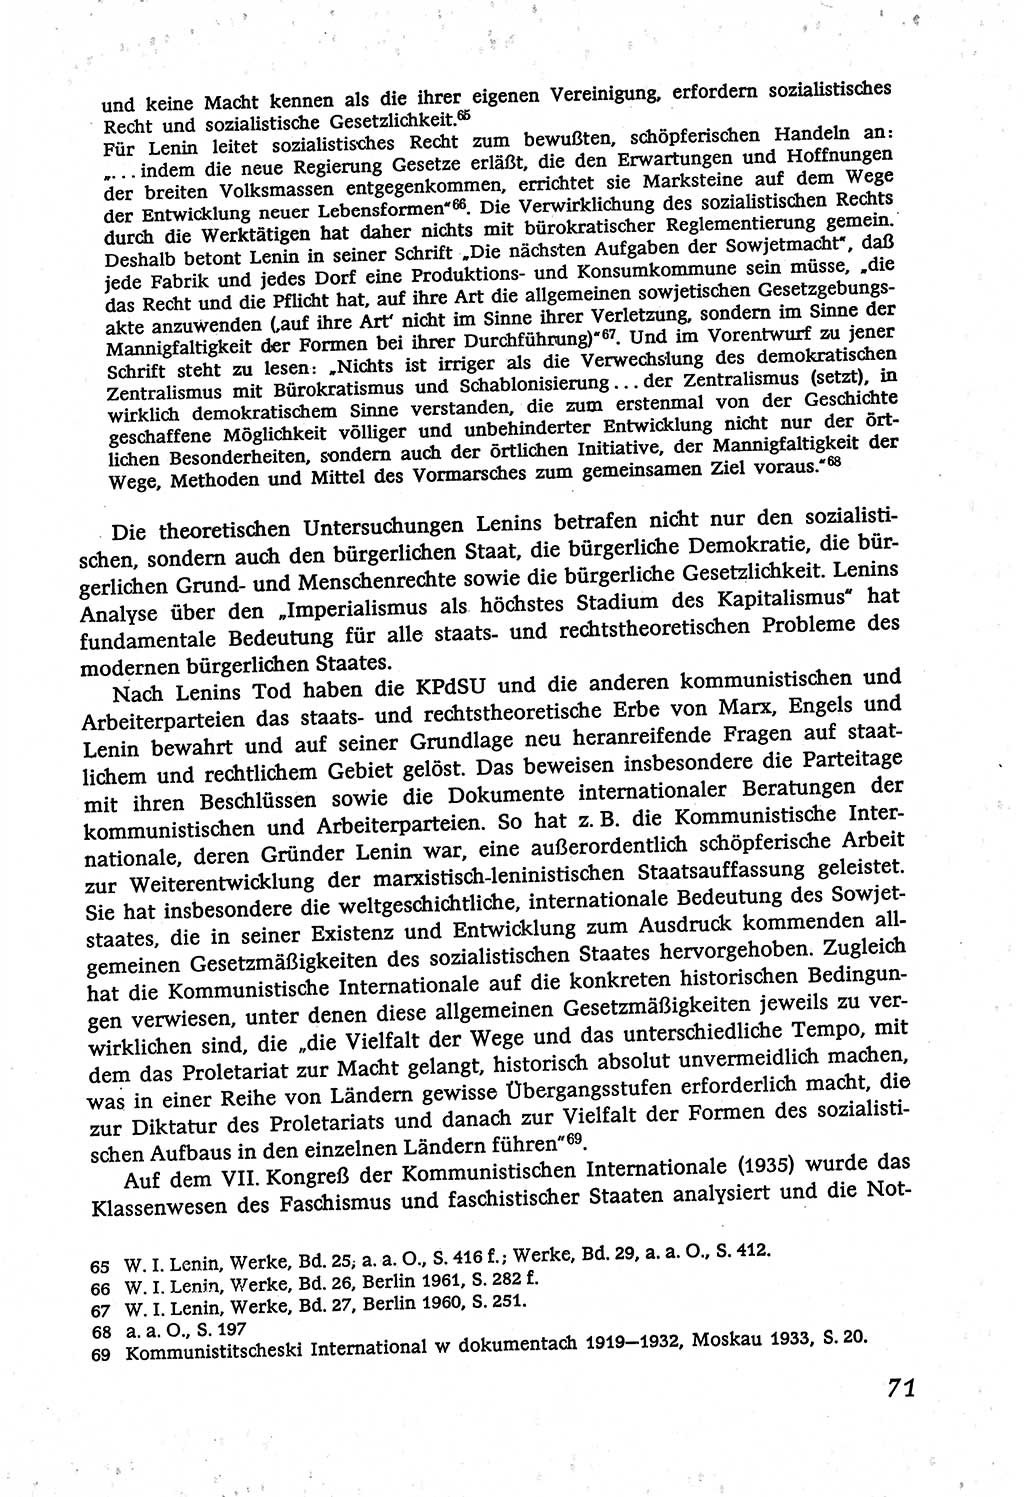 Marxistisch-leninistische (ML) Staats- und Rechtstheorie [Deutsche Demokratische Republik (DDR)], Lehrbuch 1980, Seite 71 (ML St.-R.-Th. DDR Lb. 1980, S. 71)